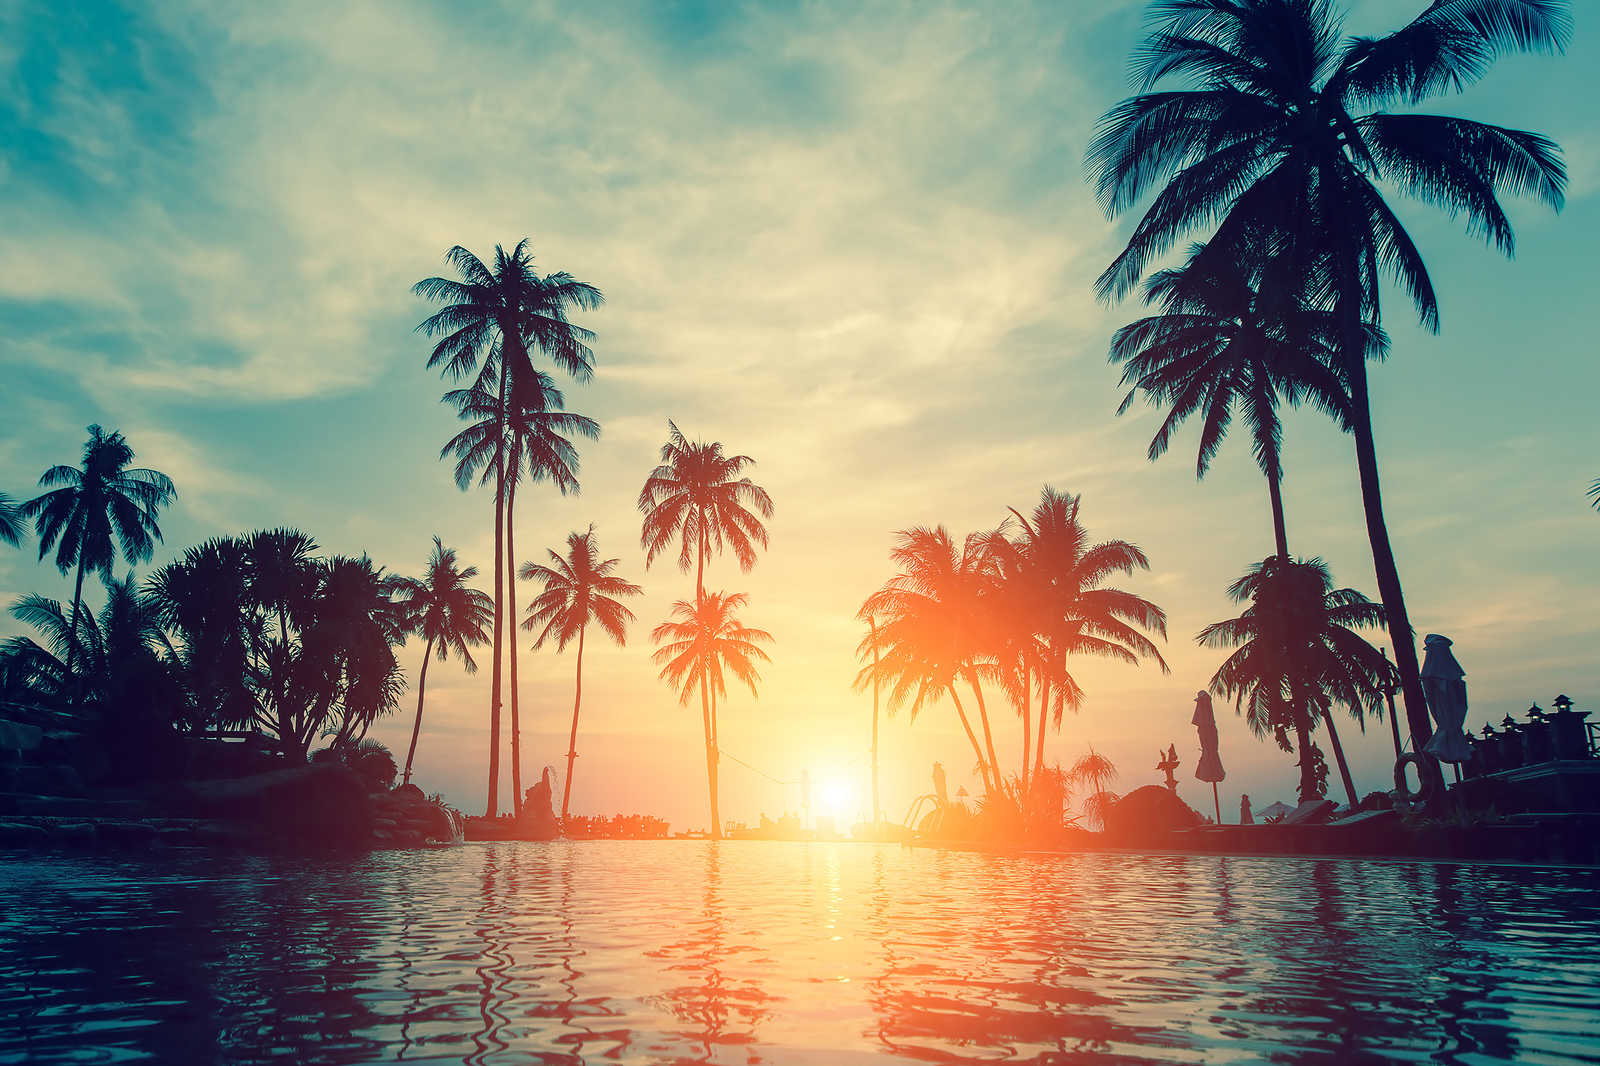             Quadro su tela con palme sull'acqua al tramonto - 0,90 m x 0,60 m
        